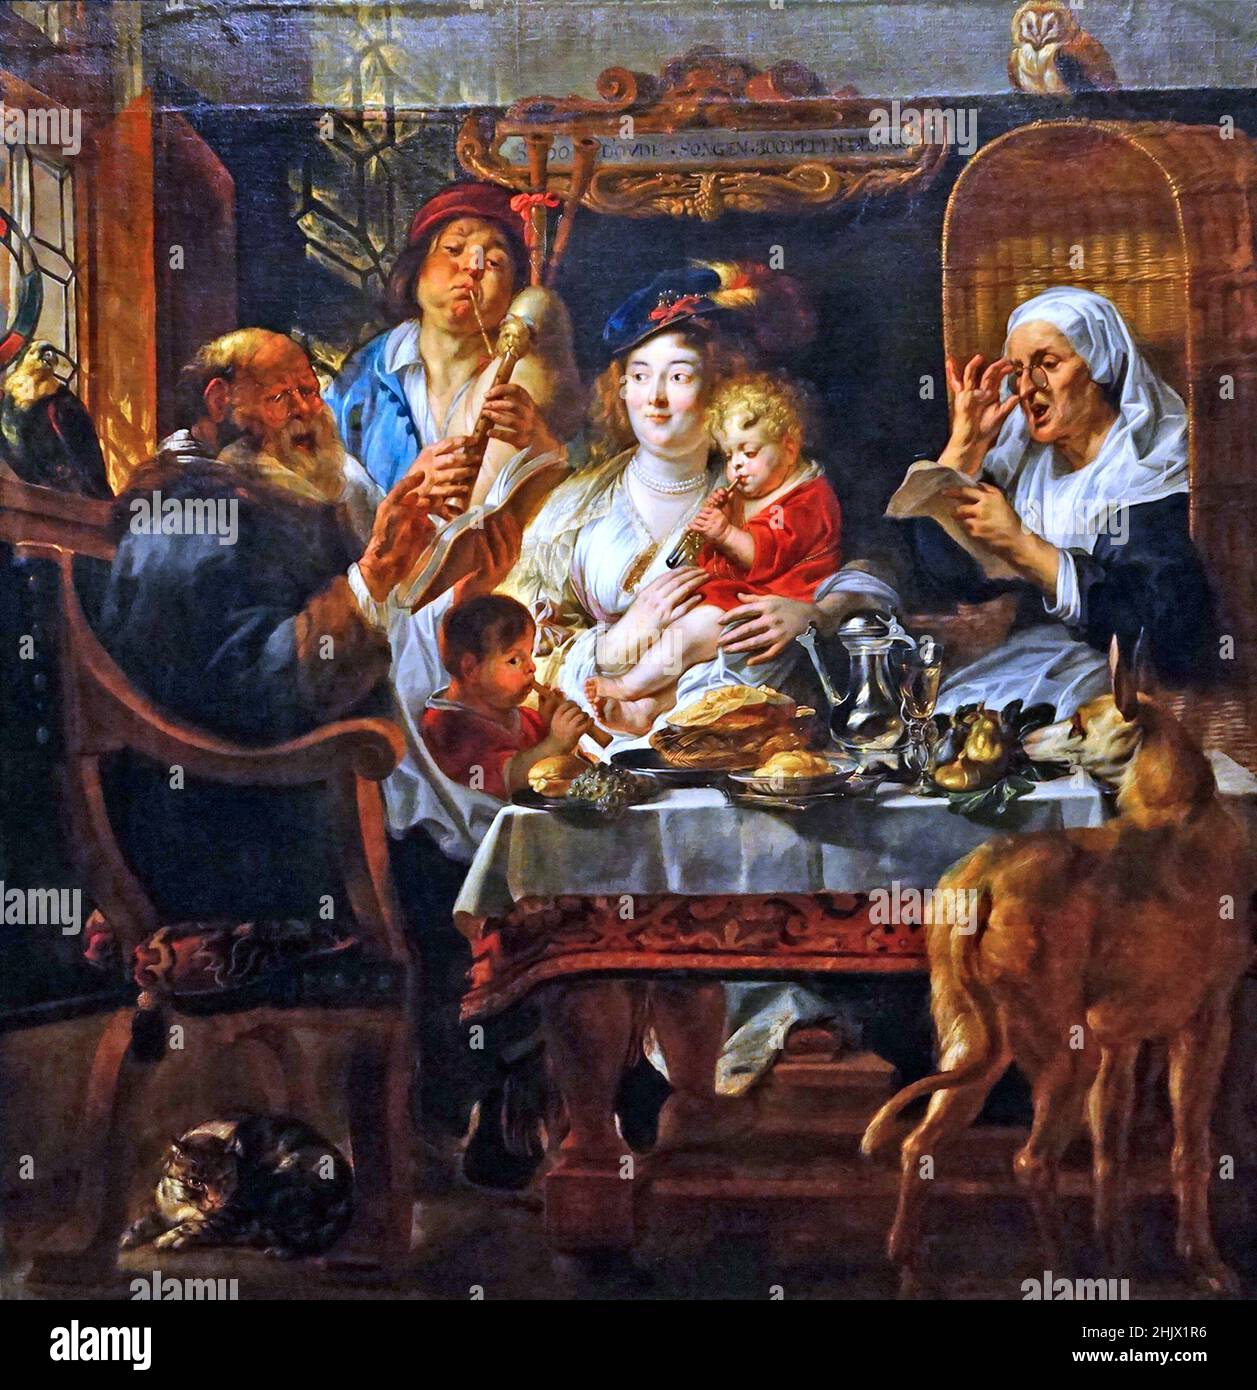 Come il vecchio cantò, così pipa il giovane da Jacob Jordaens 1593-1678. Pittore fiammingo noto per dipinti di storia, scene di genere e ritratti. Pittore fiammingo barocco dopo Peter Paul Rubens e Anthony van Dyck. Foto Stock